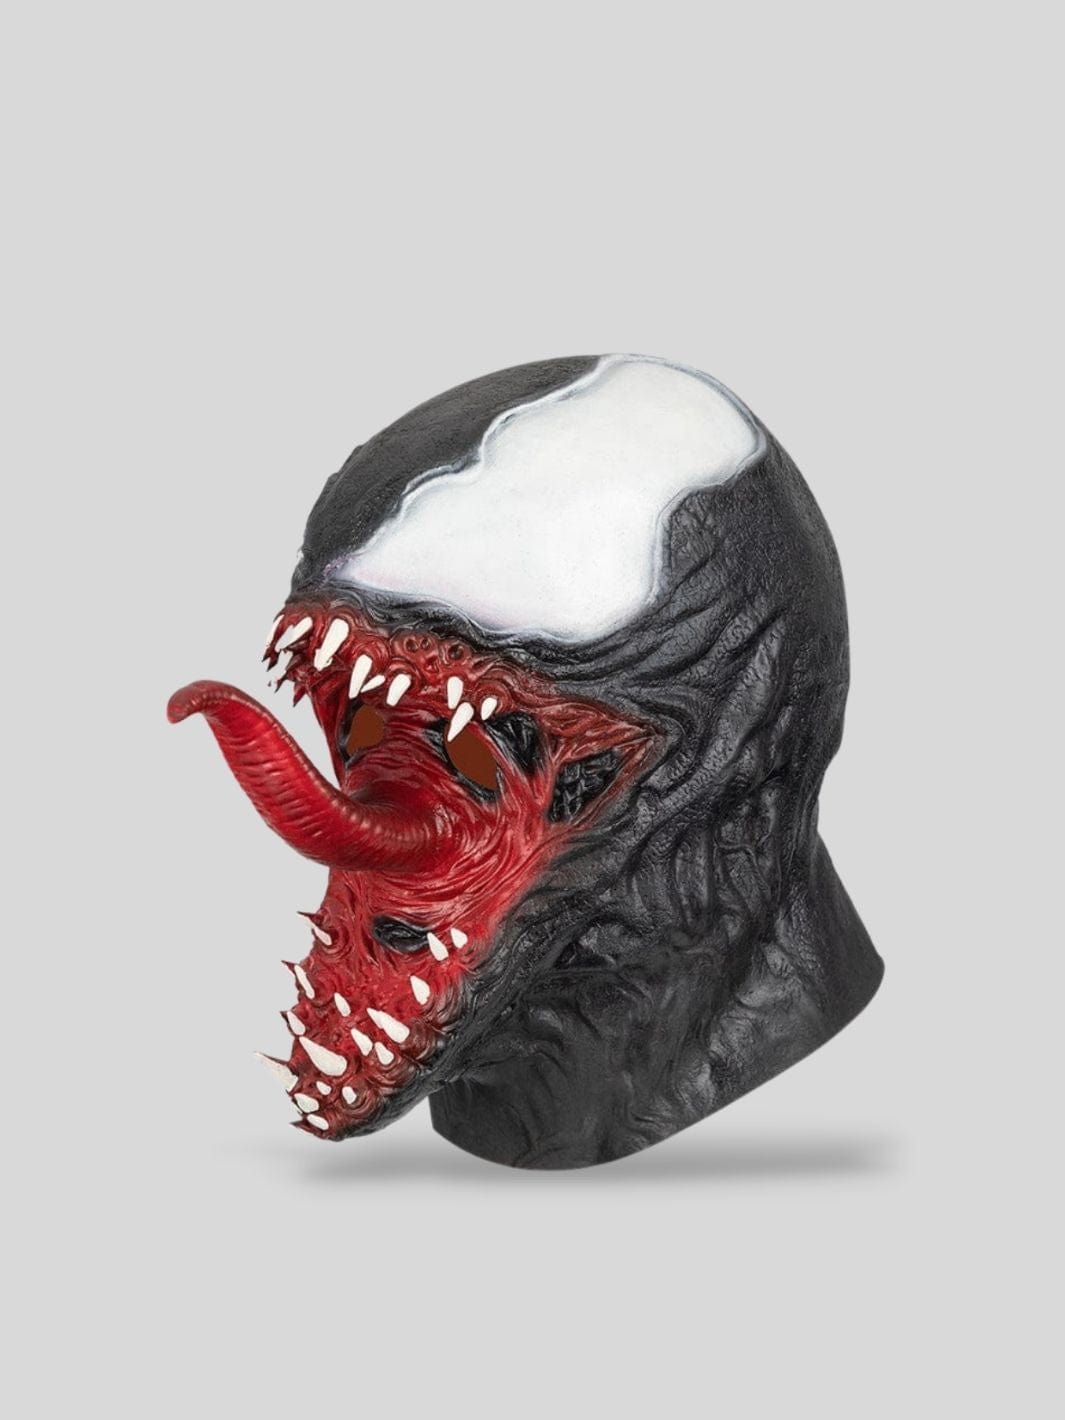 Noir Masque Venom | Mask Mania